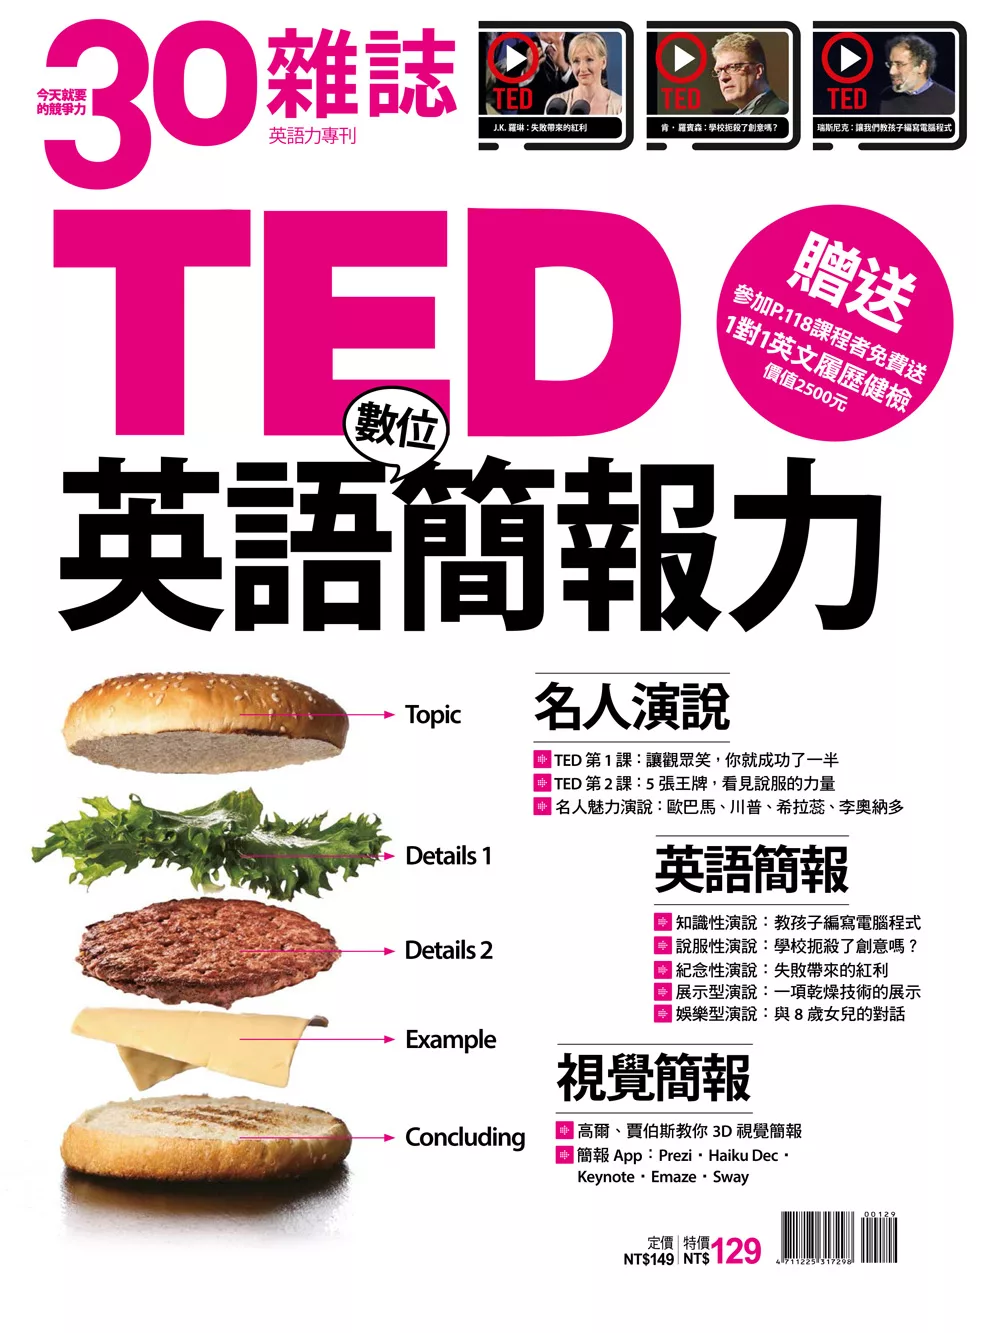 30雜誌 TED英語數位簡報力 (電子雜誌)